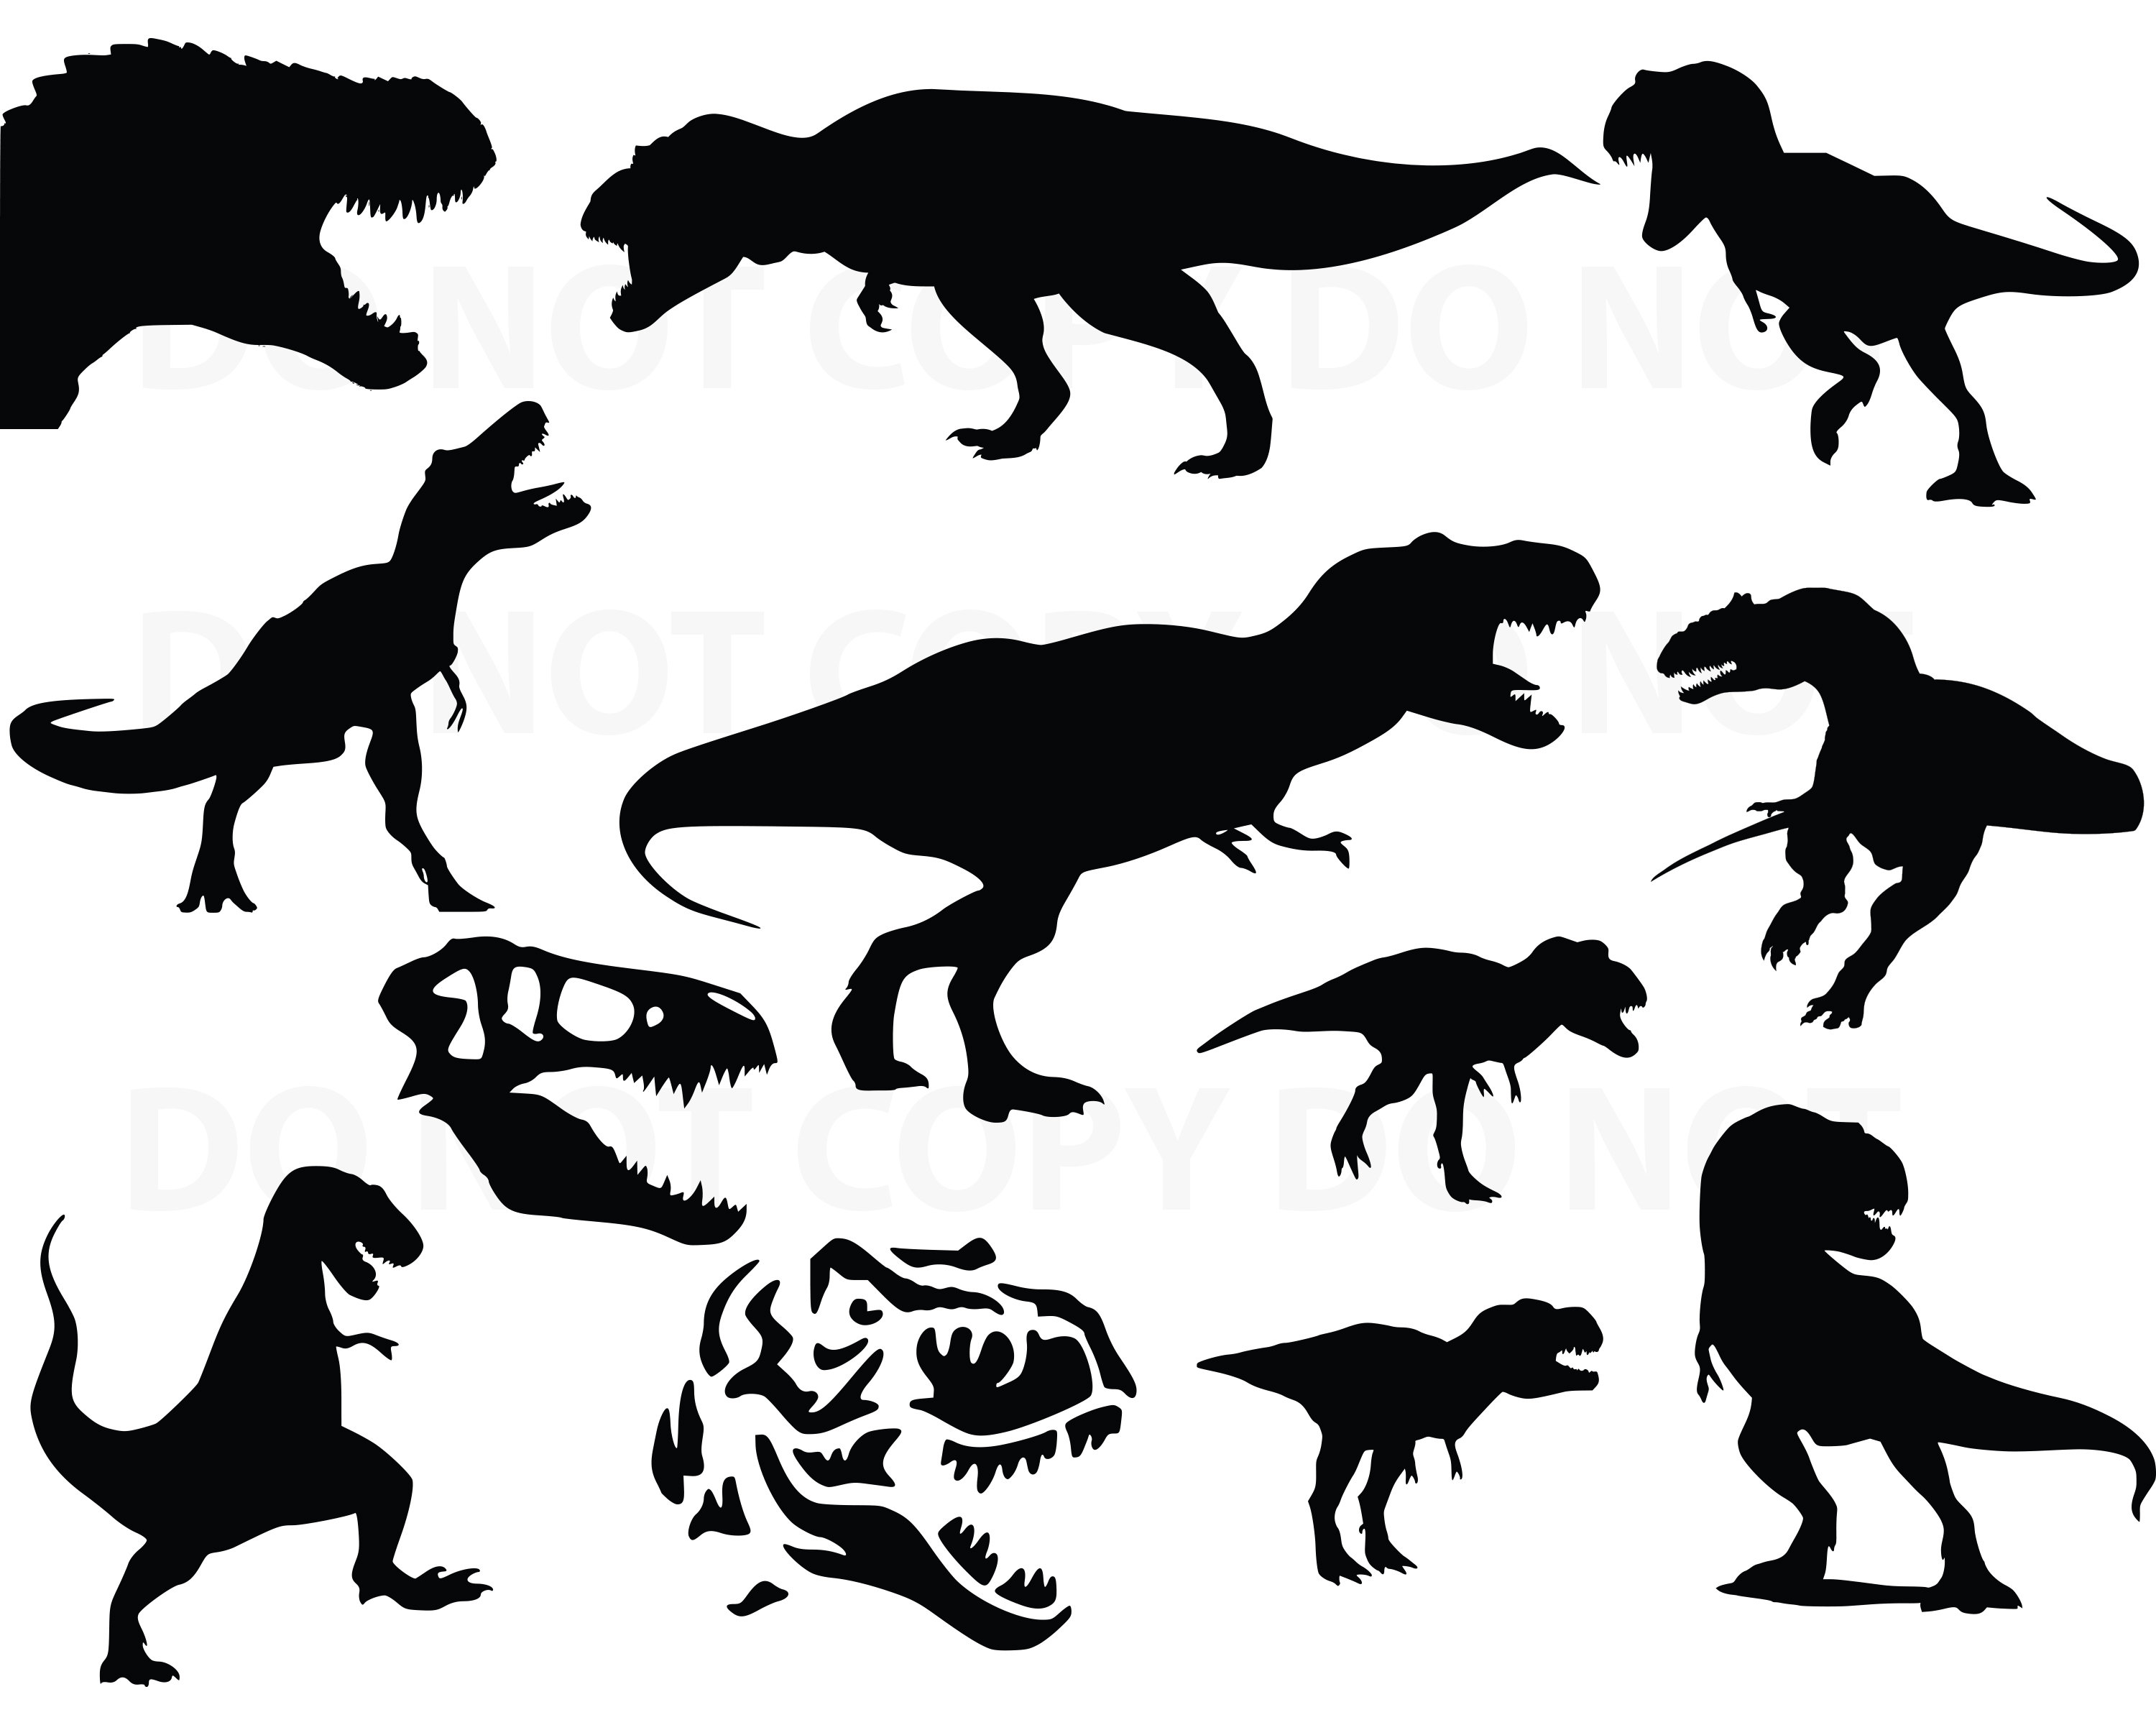 Download T Rex SVG Bundle Dinosaur Vector Images Silhouette Clip Art | Etsy